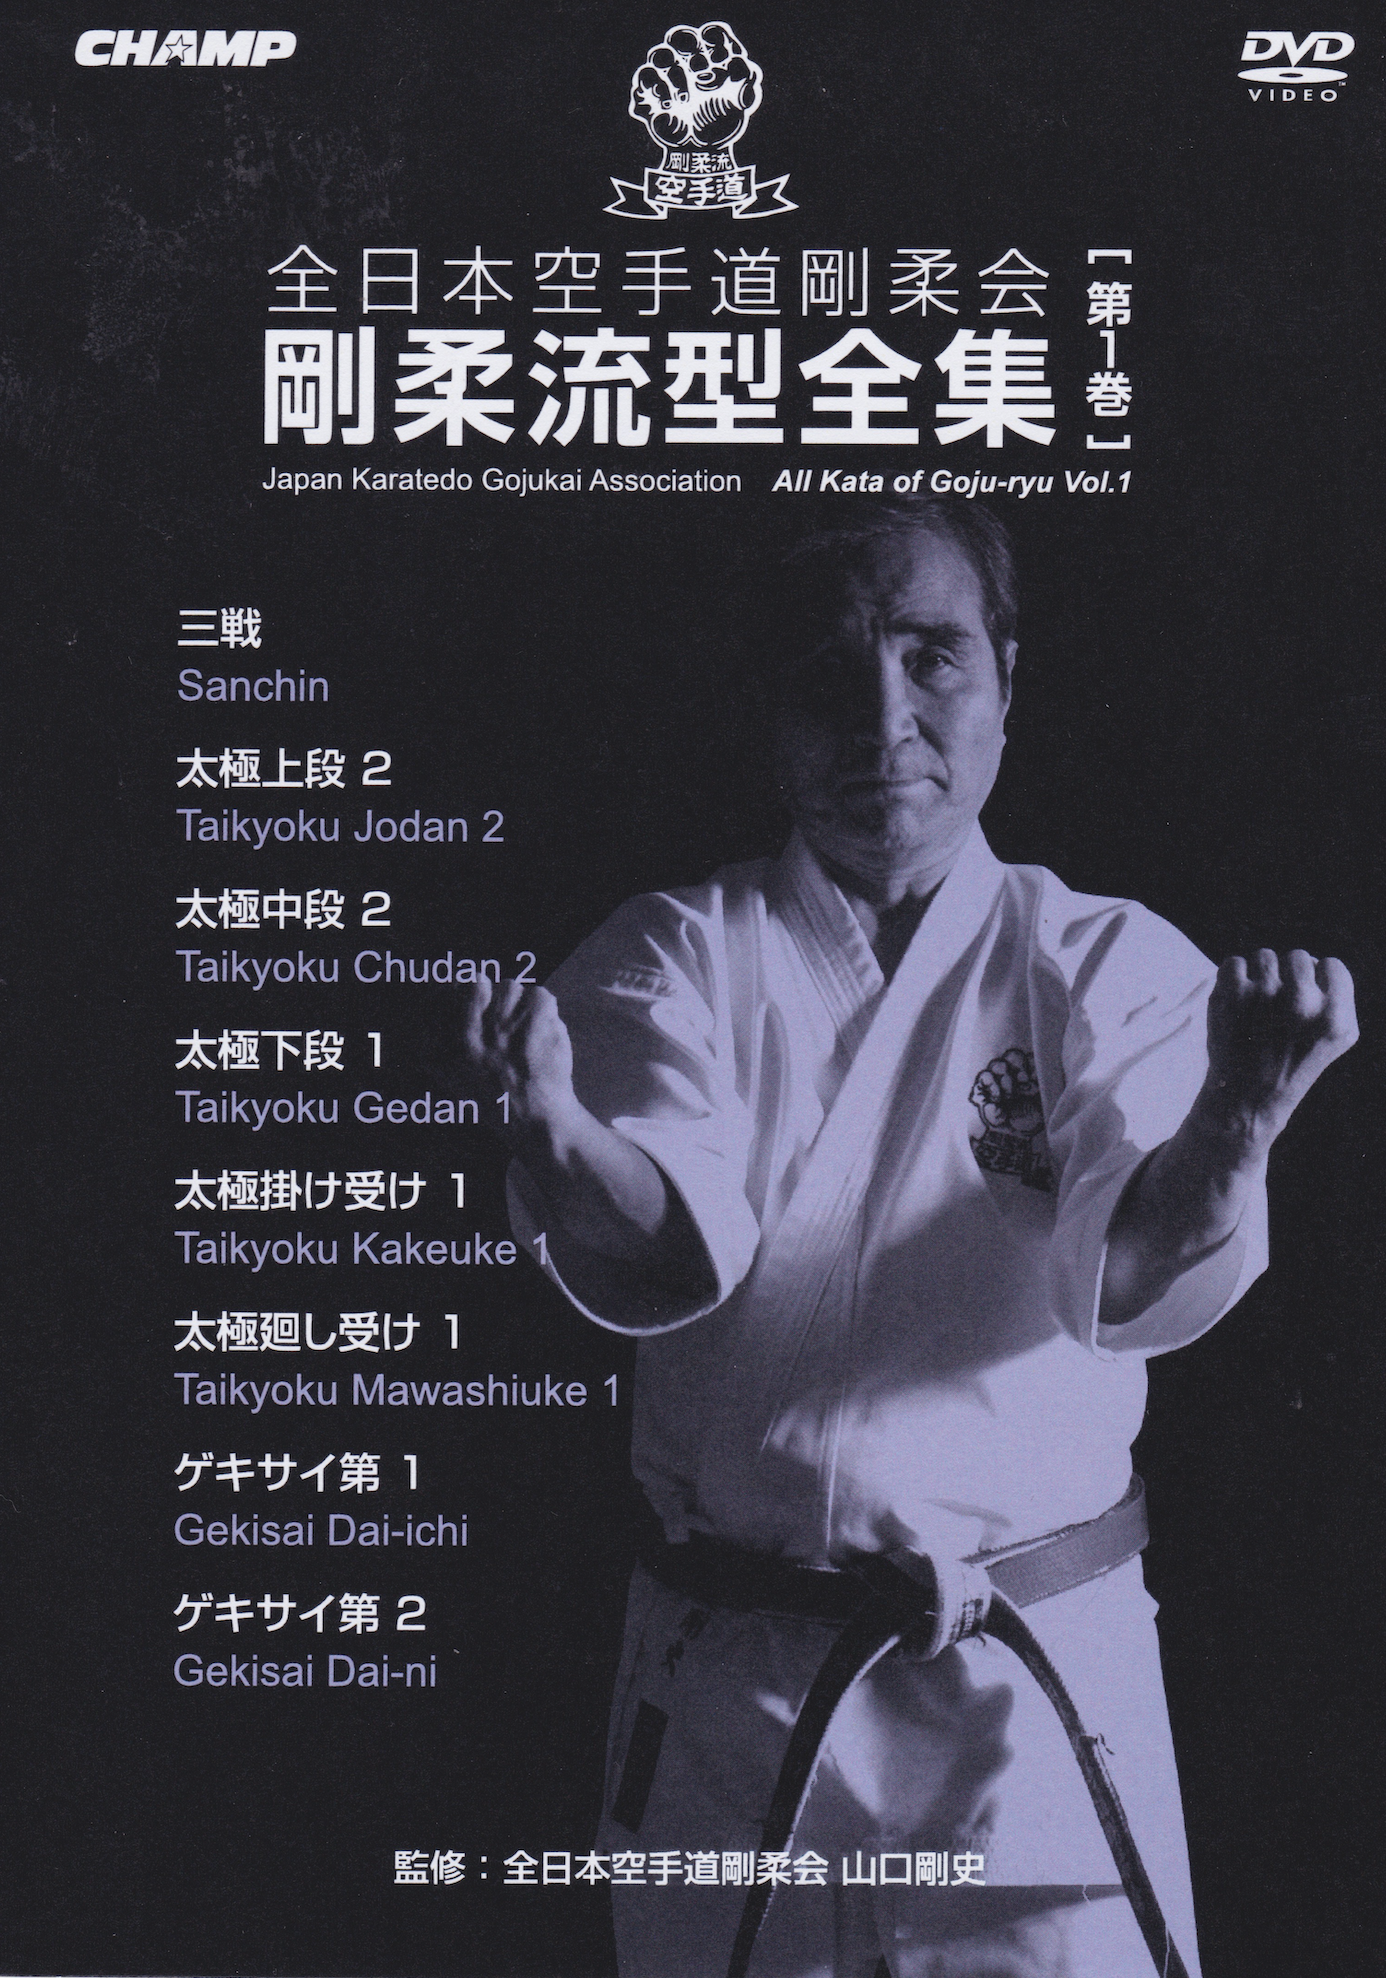 Japan Karate-Do Gojukai Goju Ryu Kata DVD 1